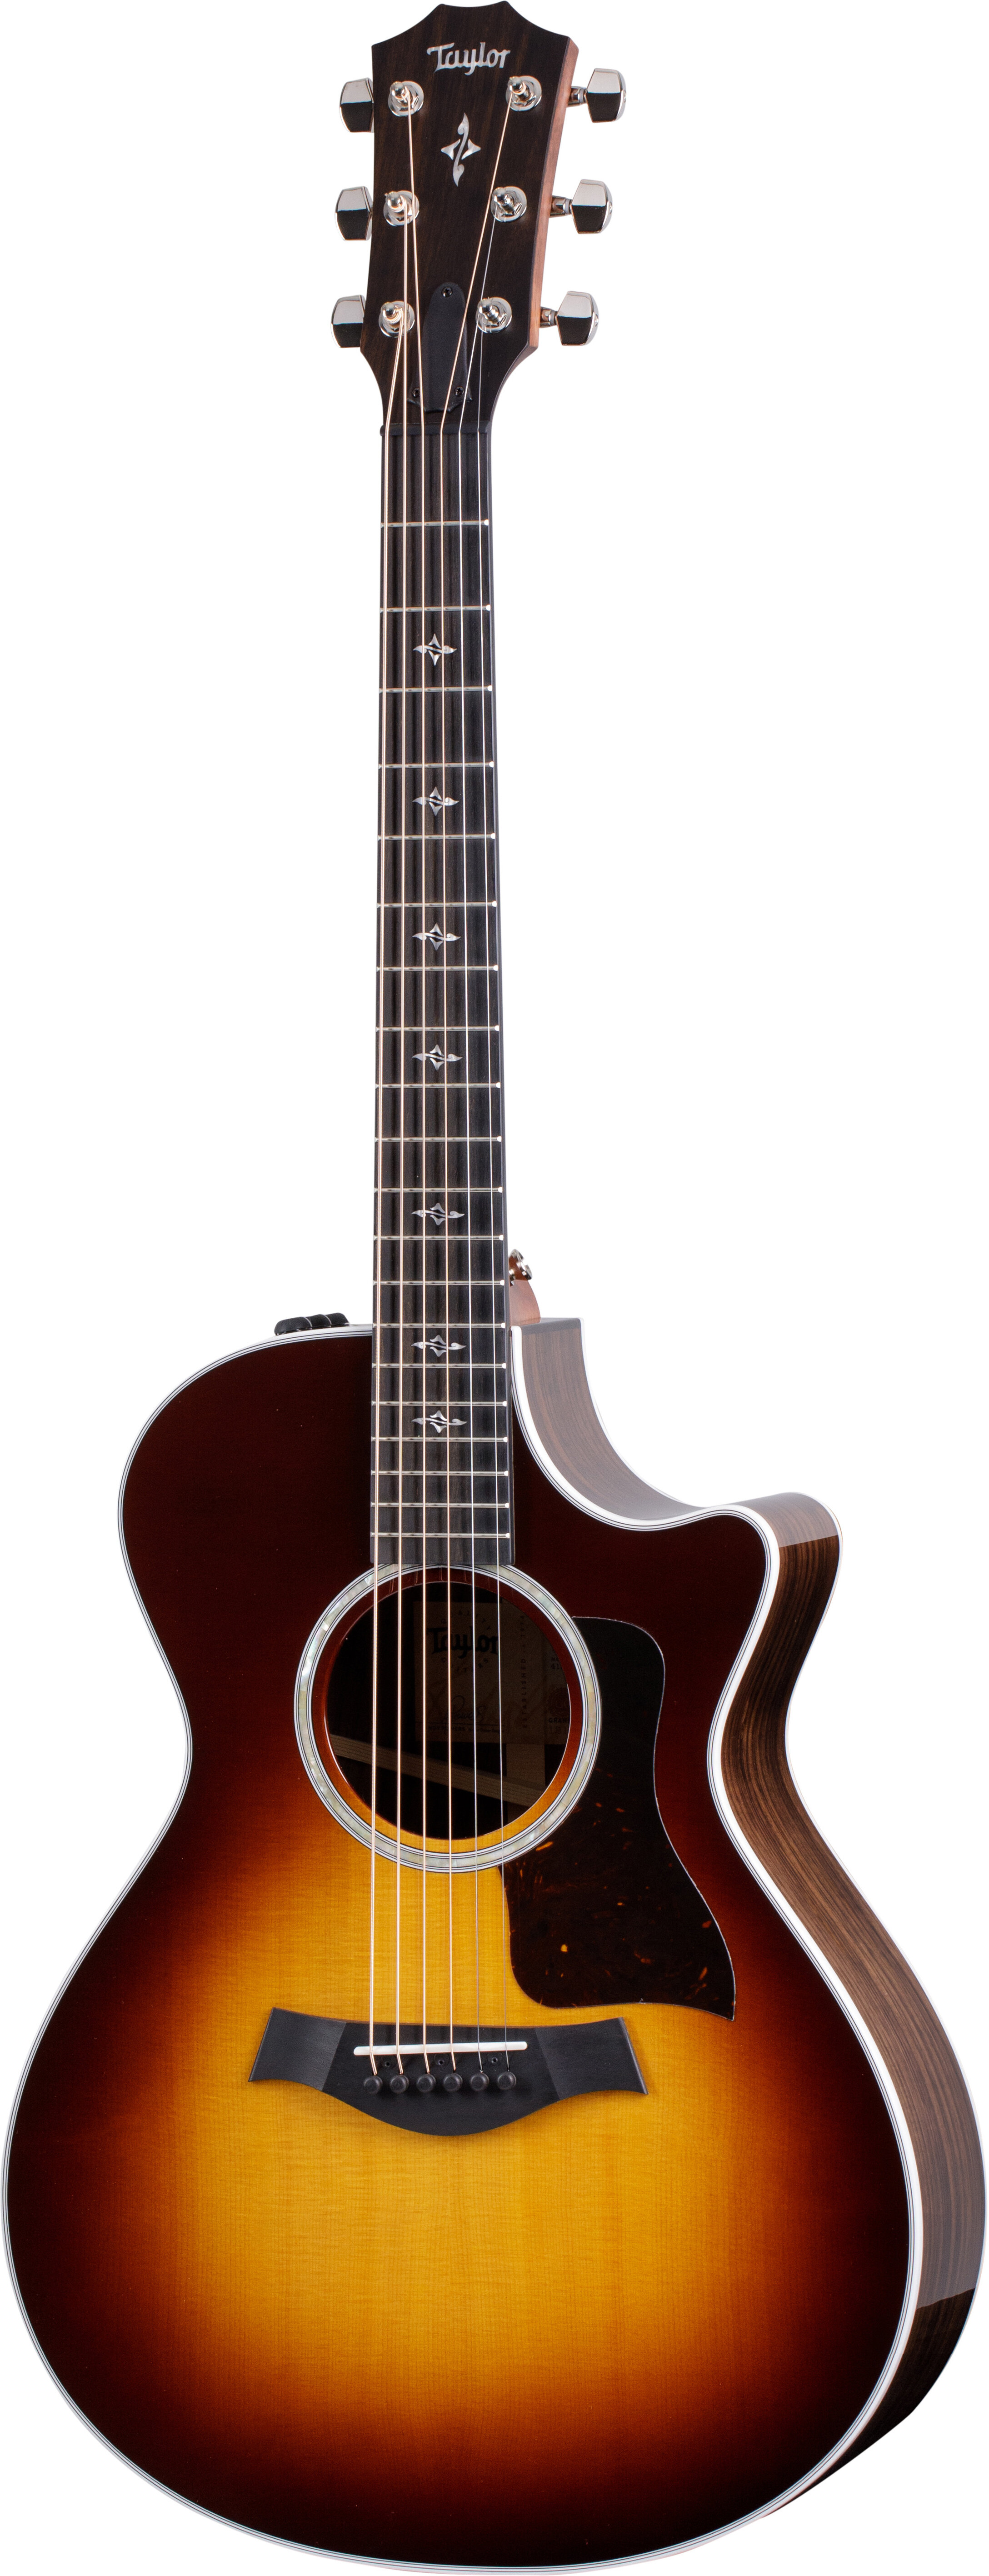 Taylor 412ce Grand Concert A/E Sunburst w/Case -  Taylor Guitars, 412ce-TSB